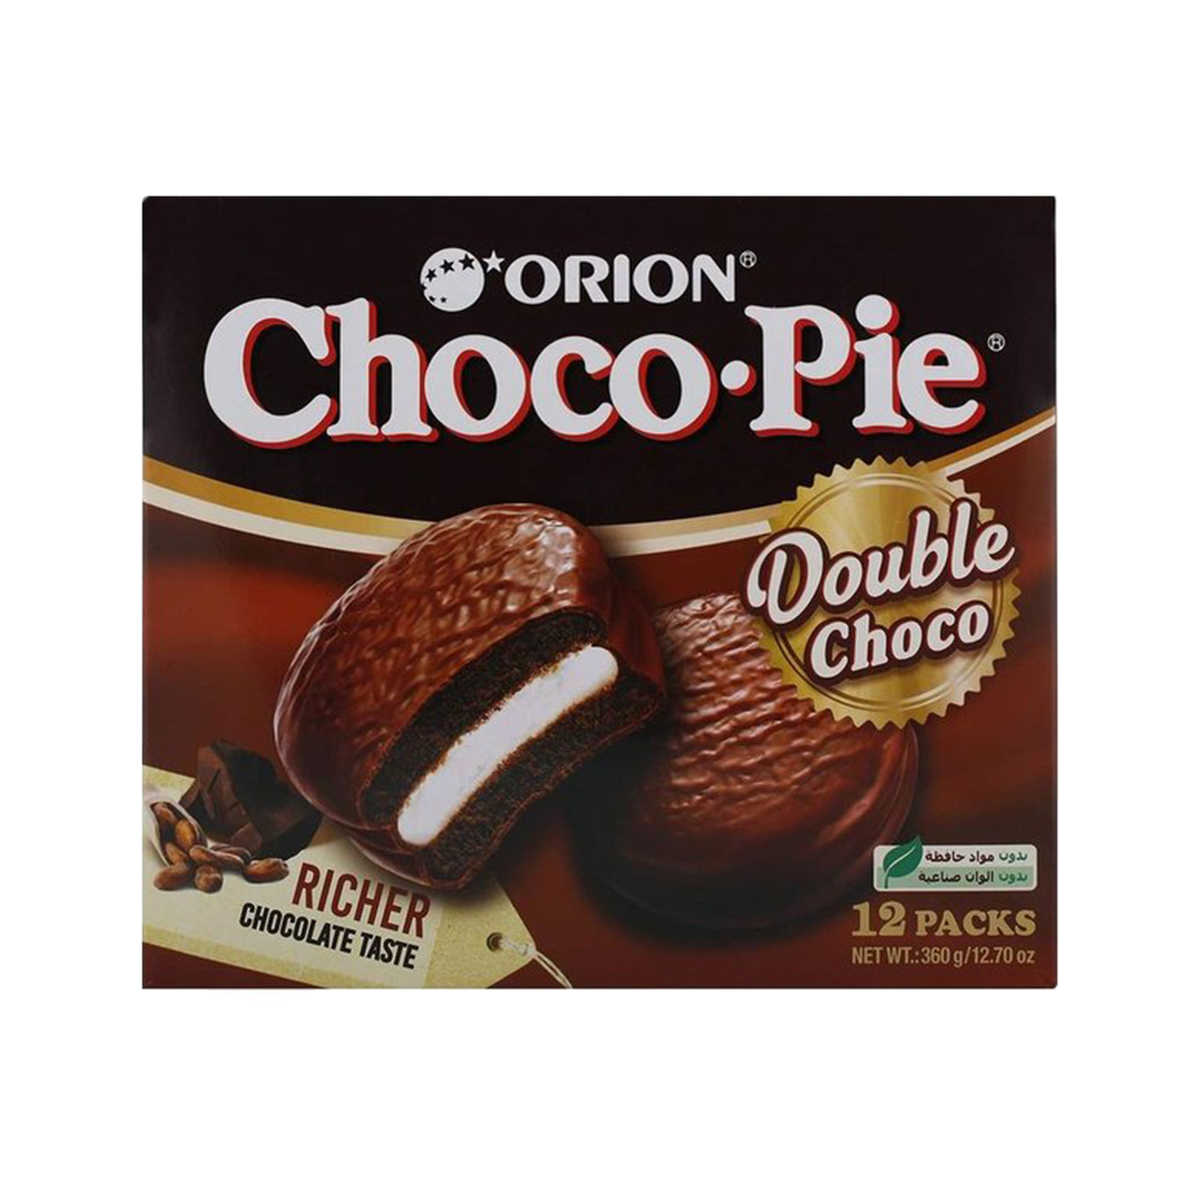 Bolinho de Chocolate Choco Pie Double Choco Orion 360 gramas - 12 unidades